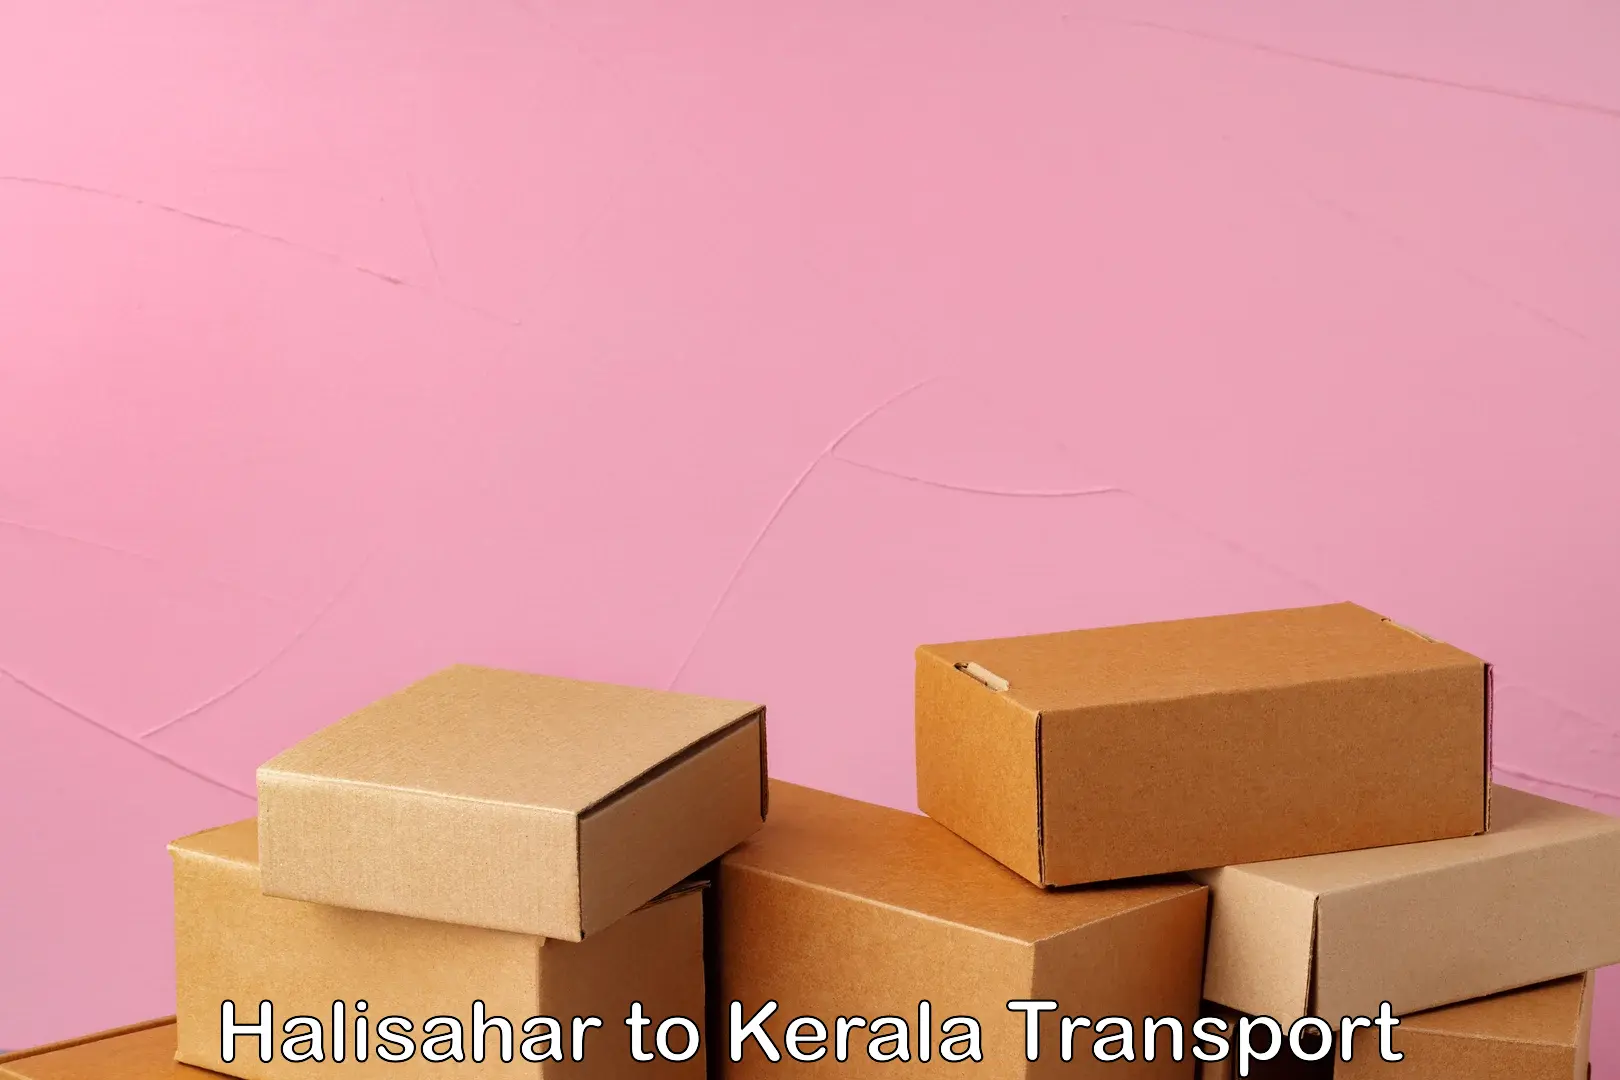 Air freight transport services Halisahar to Ponekkara